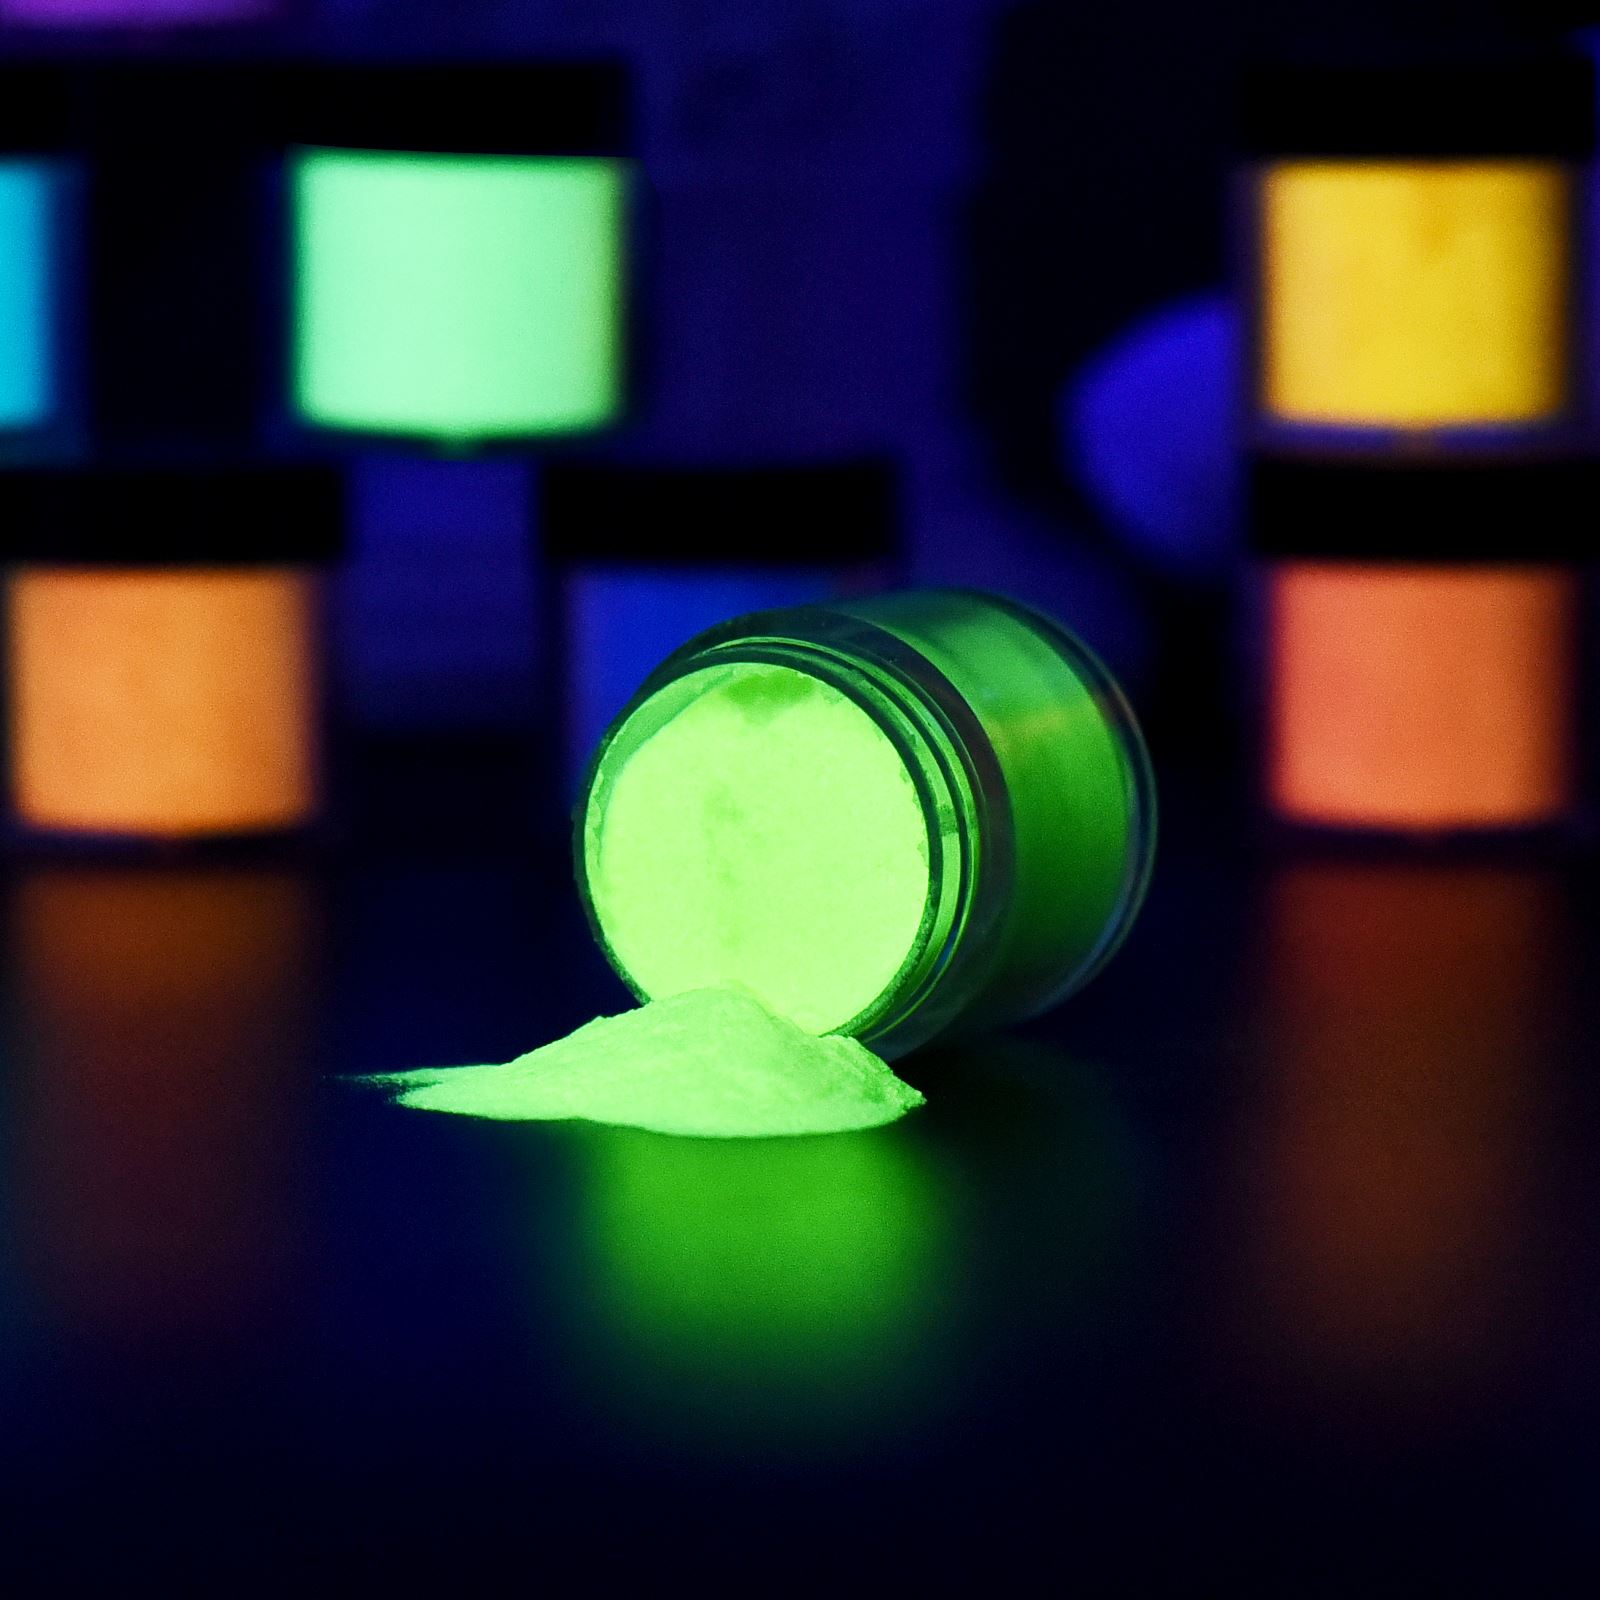 Glow-In-The-Dark Acrylic Powder 12Pcs/1Set of Powder of Glow In